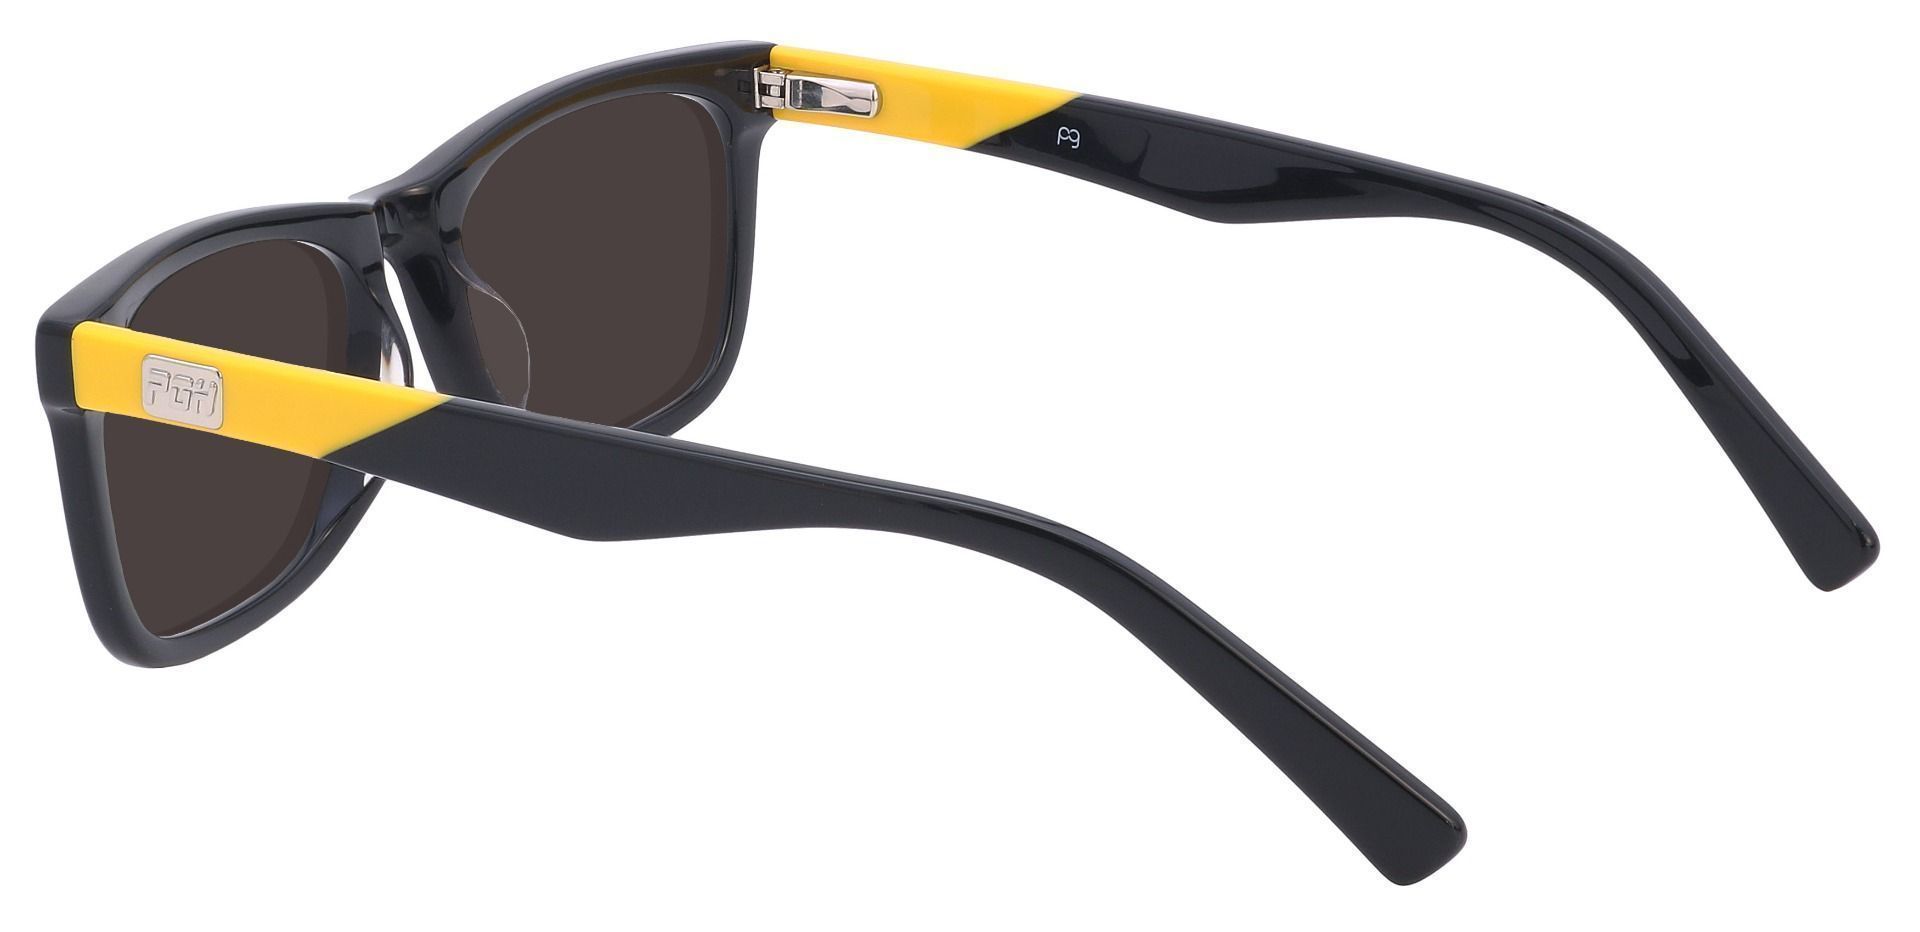 Blitz Rectangle Reading Sunglasses - Black Frame With Gray Lenses